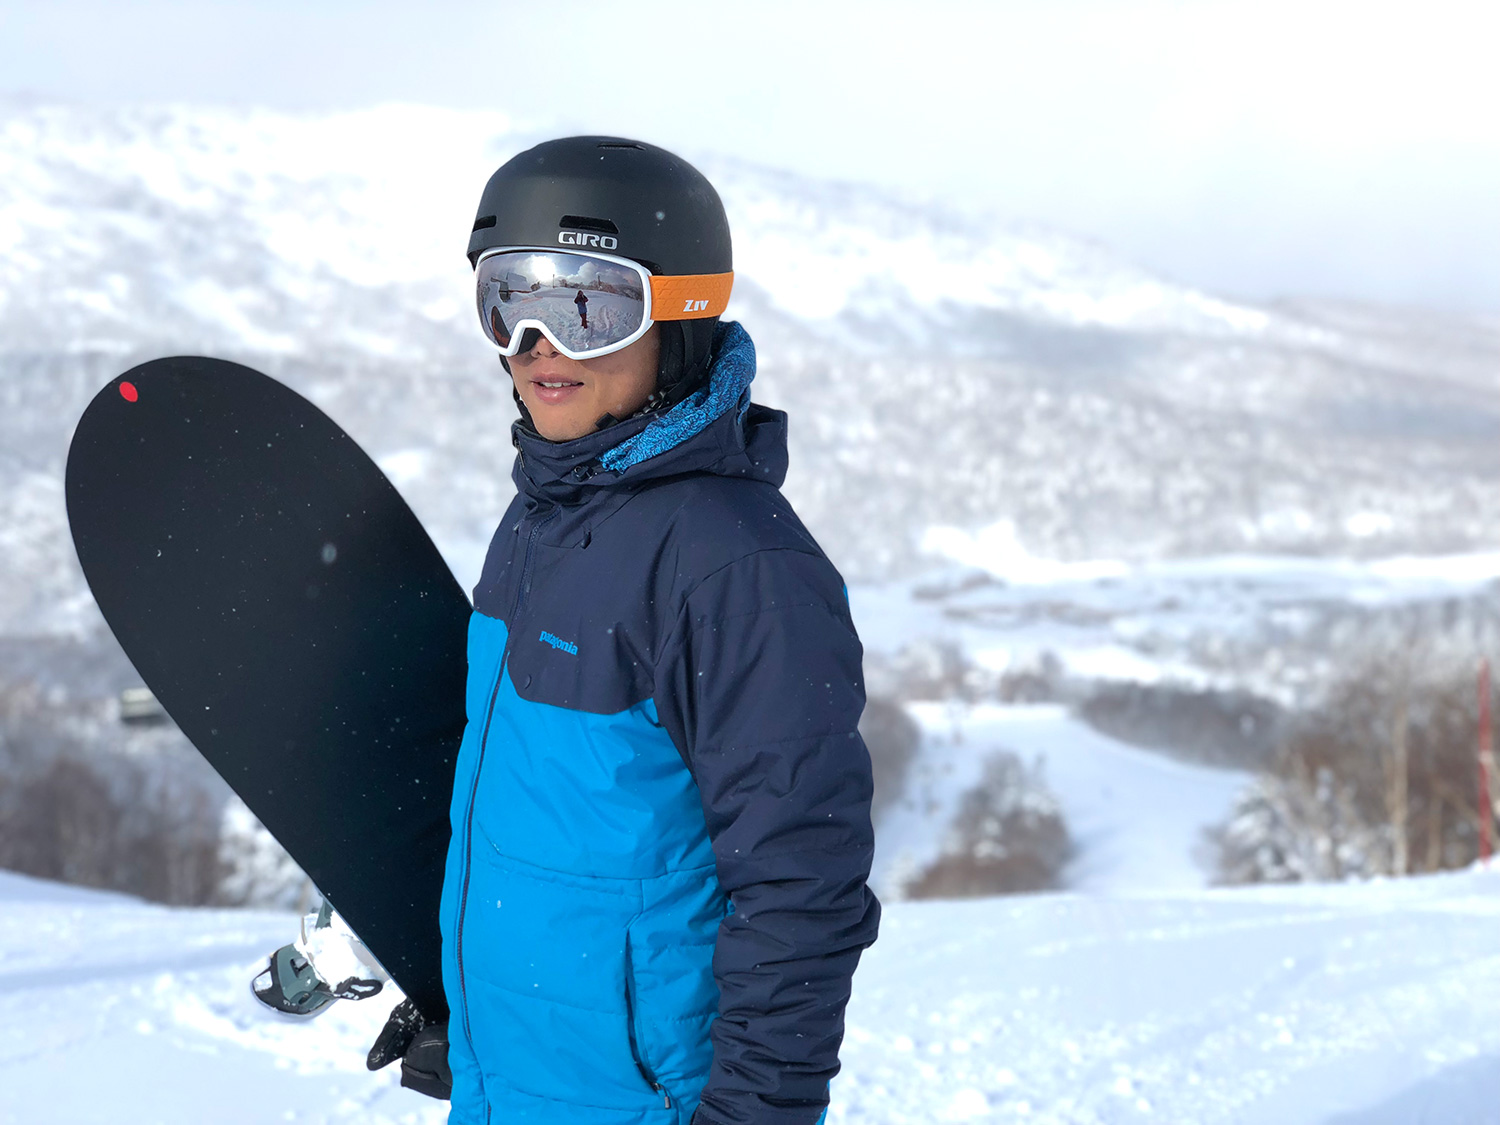 戴著ZIV雪鏡的年輕男孩，拿著雪板站在雪地裡